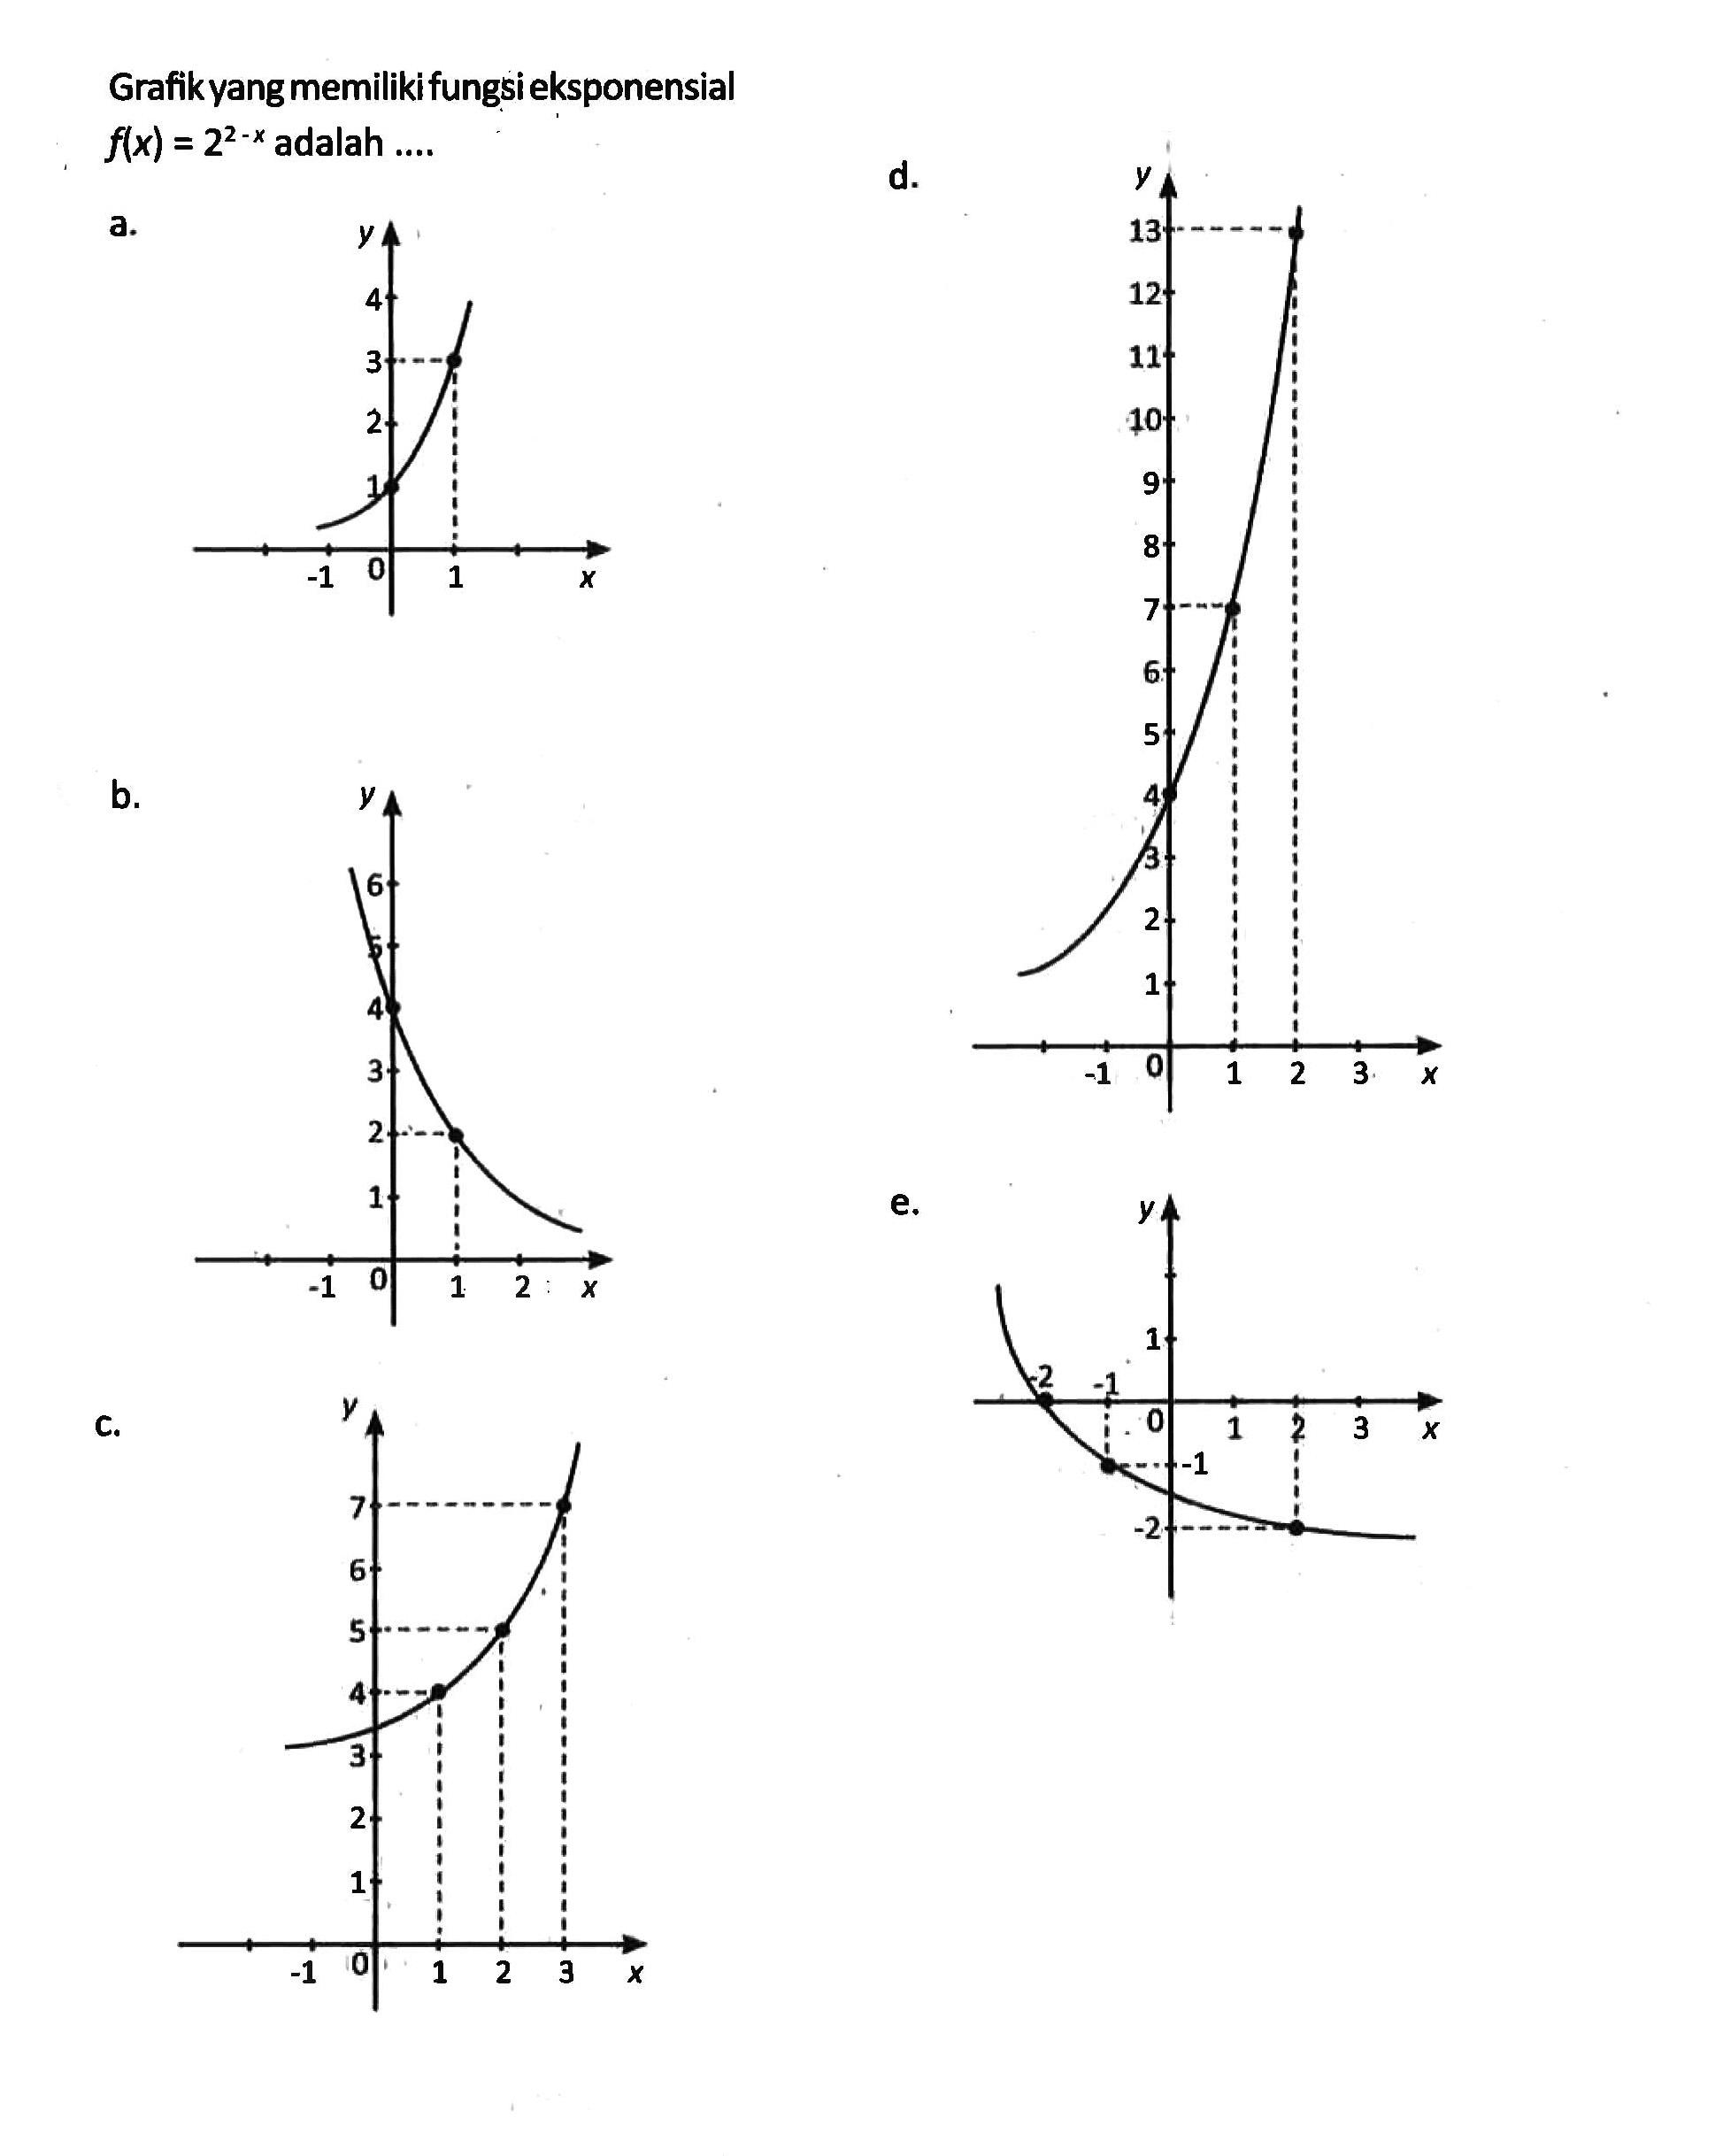 Grafik yang memiliki fungsi eksponensial f(x) = 2^(2 - x) adalah...